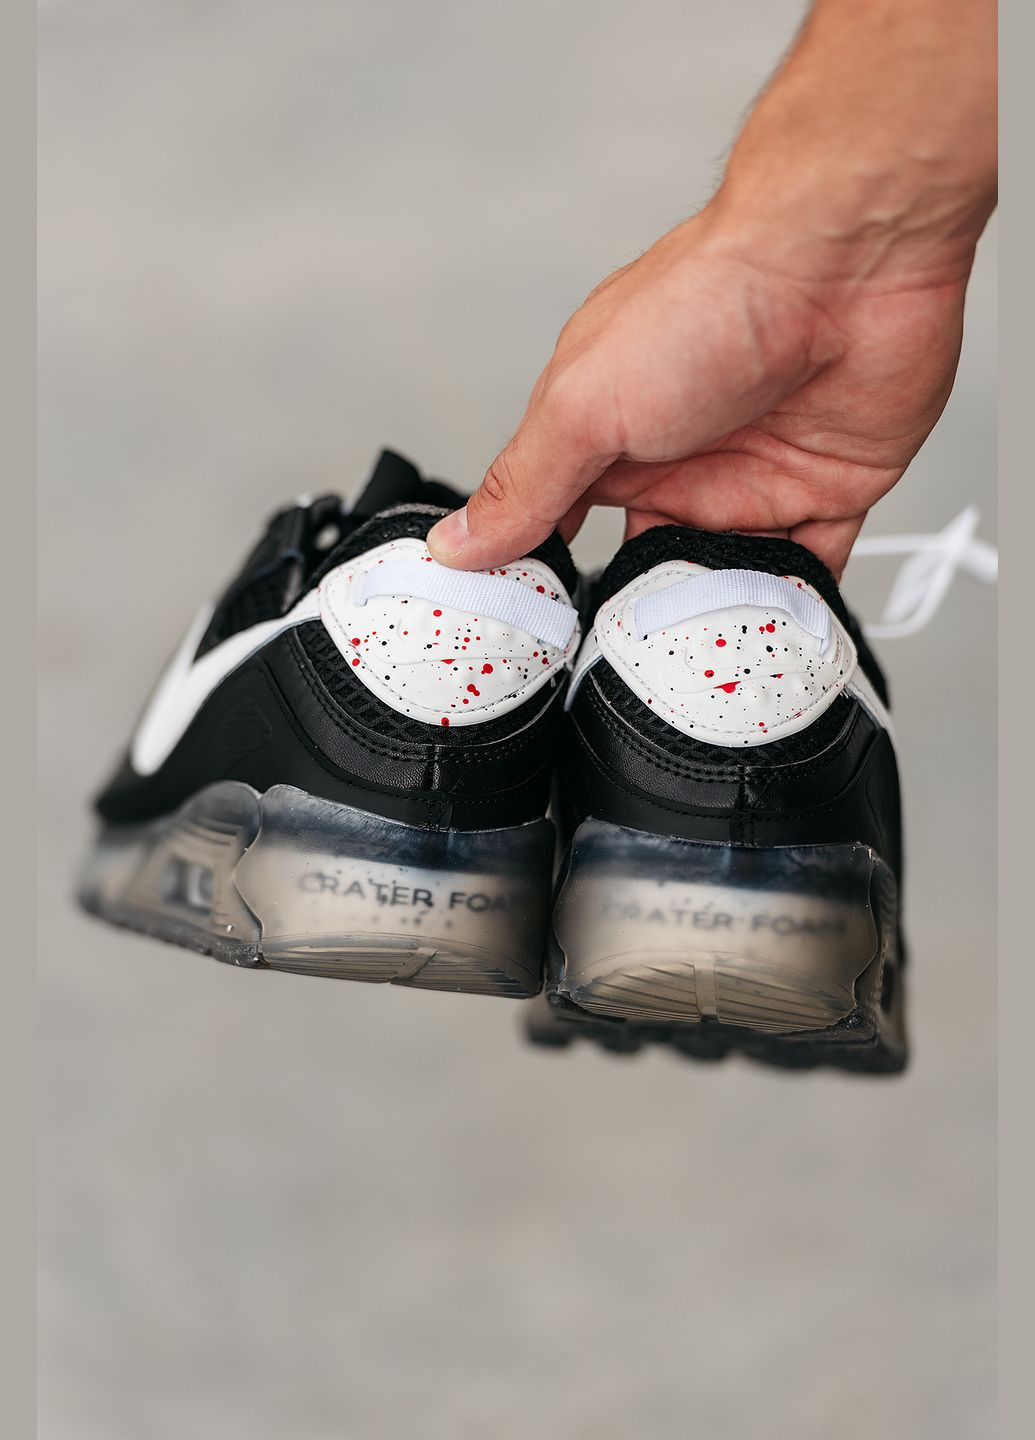 Чорно-білі Осінні кросівки чоловічі Nike Air Max 90 Terrascape